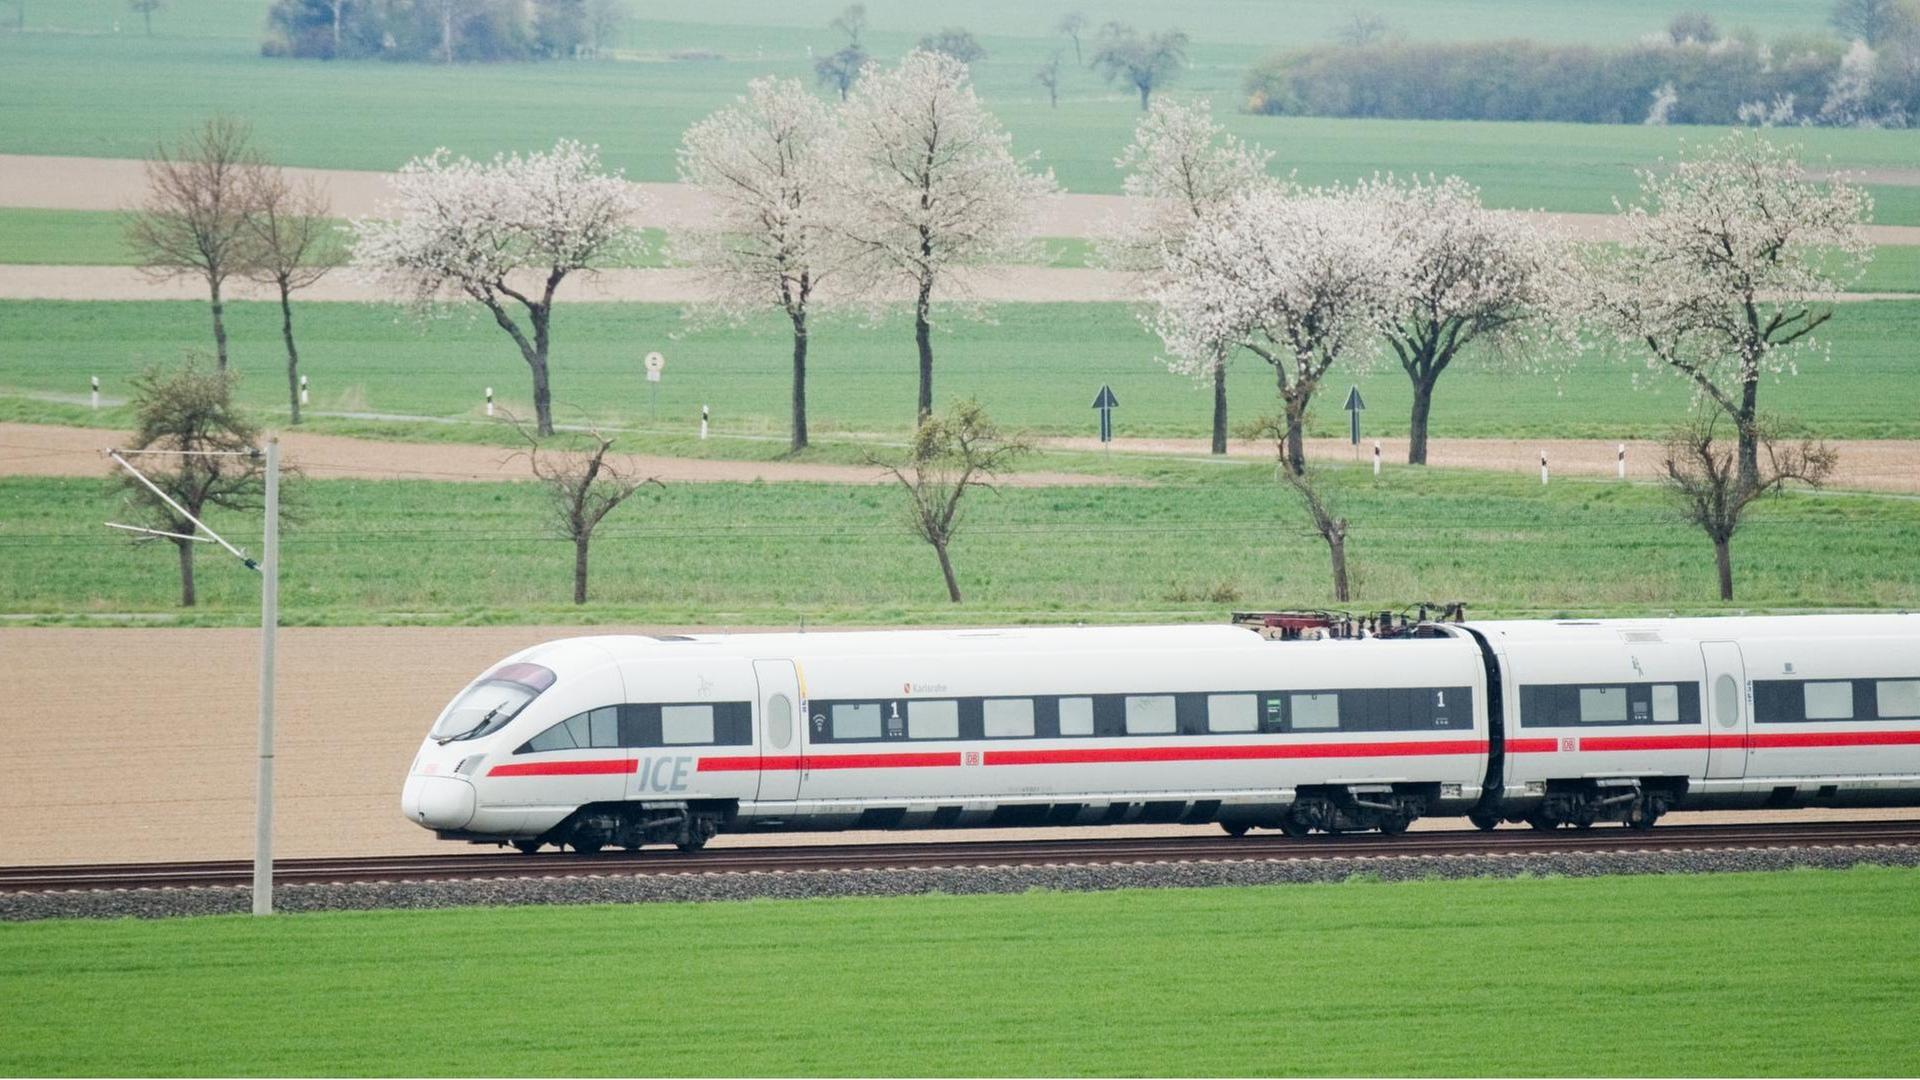 Ein ICE T der Deutschen Bahn fährt auf der ICE Trasse zwischen Hildesheim und Berlin. Der ICE T ist mit einer besonderen Technik konzipiert, um auf kurvenreichen Strecken den Wagenkasten ähnlich wie ein Motorradfahrer auf die Seite neigen zu können